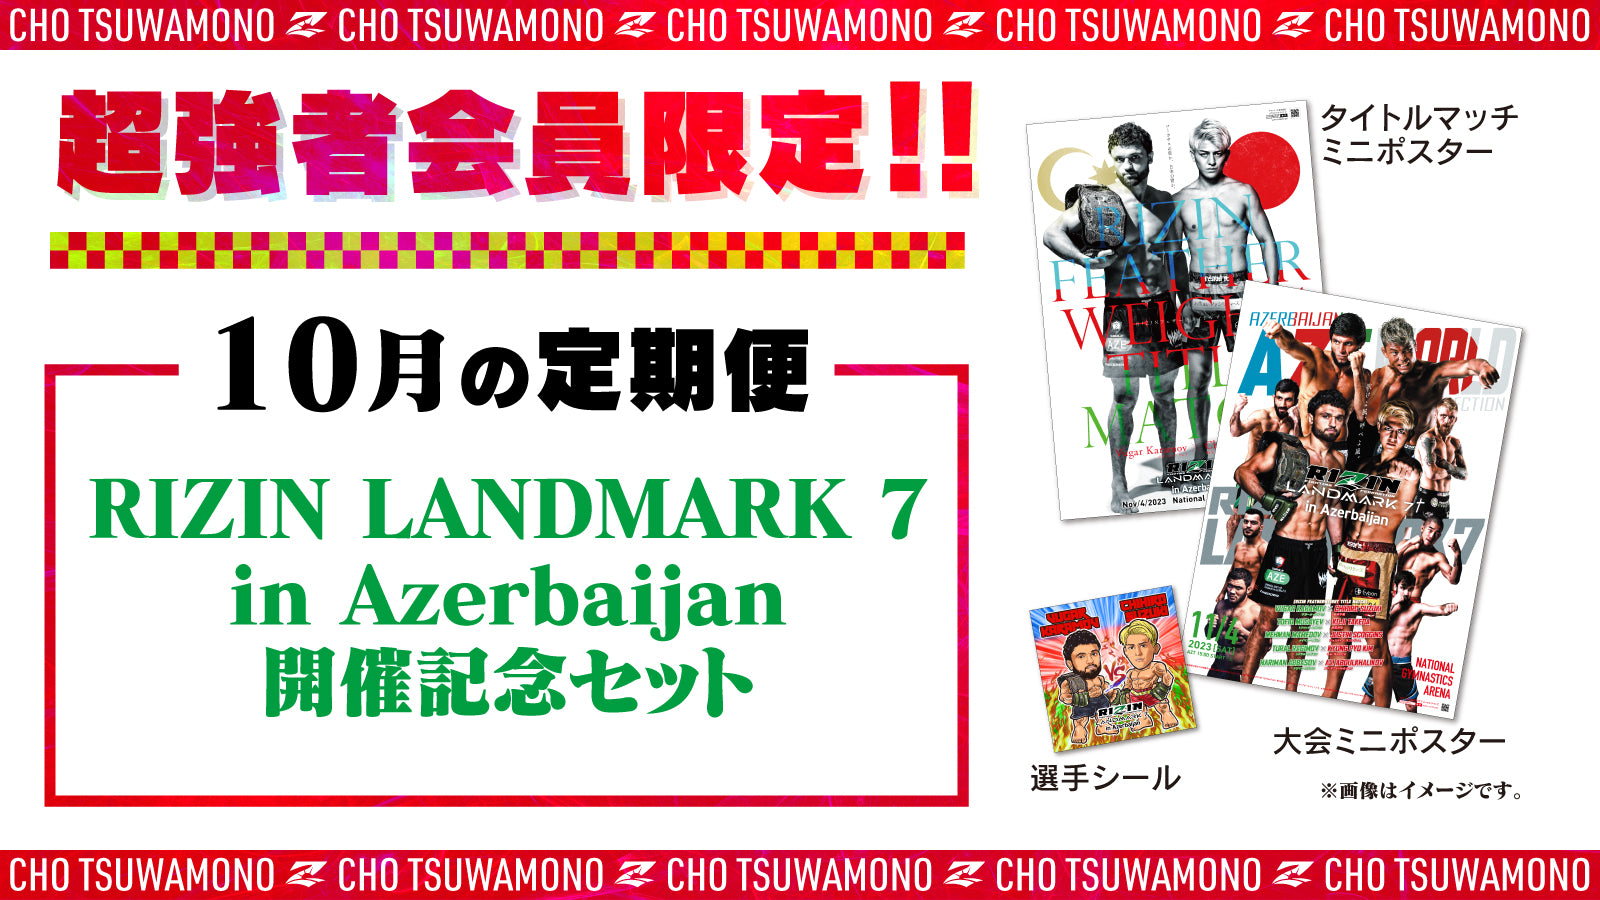 10月は「RIZIN LANDMARK 7 in Azerbaijan 開催記念セット」をお届け 